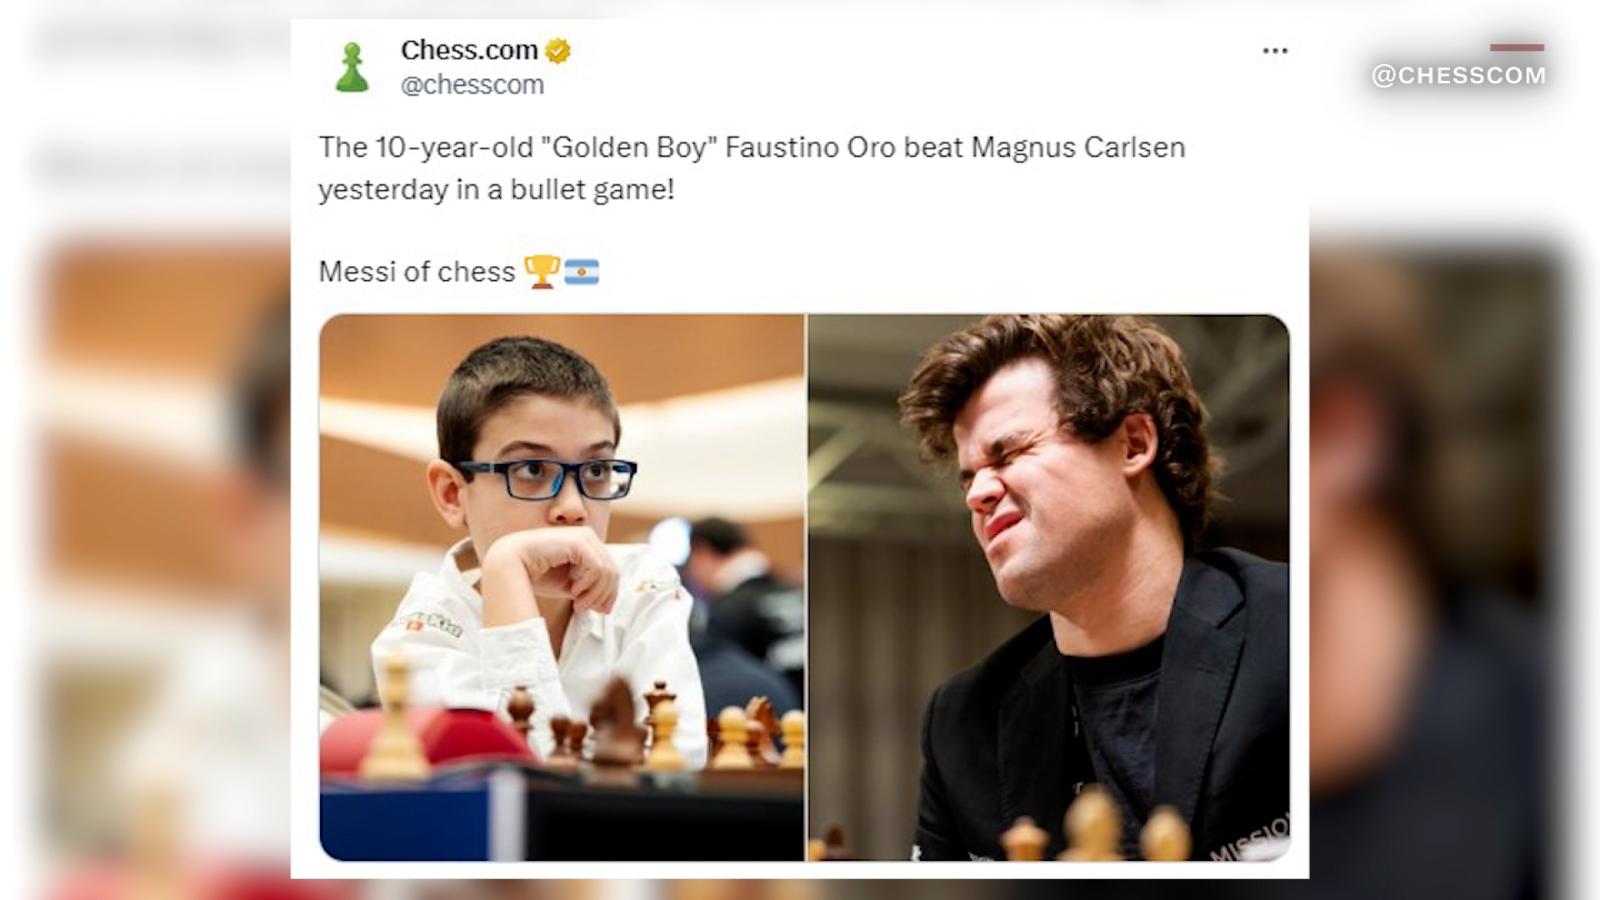 10岁阿根廷男孩福斯蒂诺·奥罗击败国际象棋明星马格努斯·卡尔森